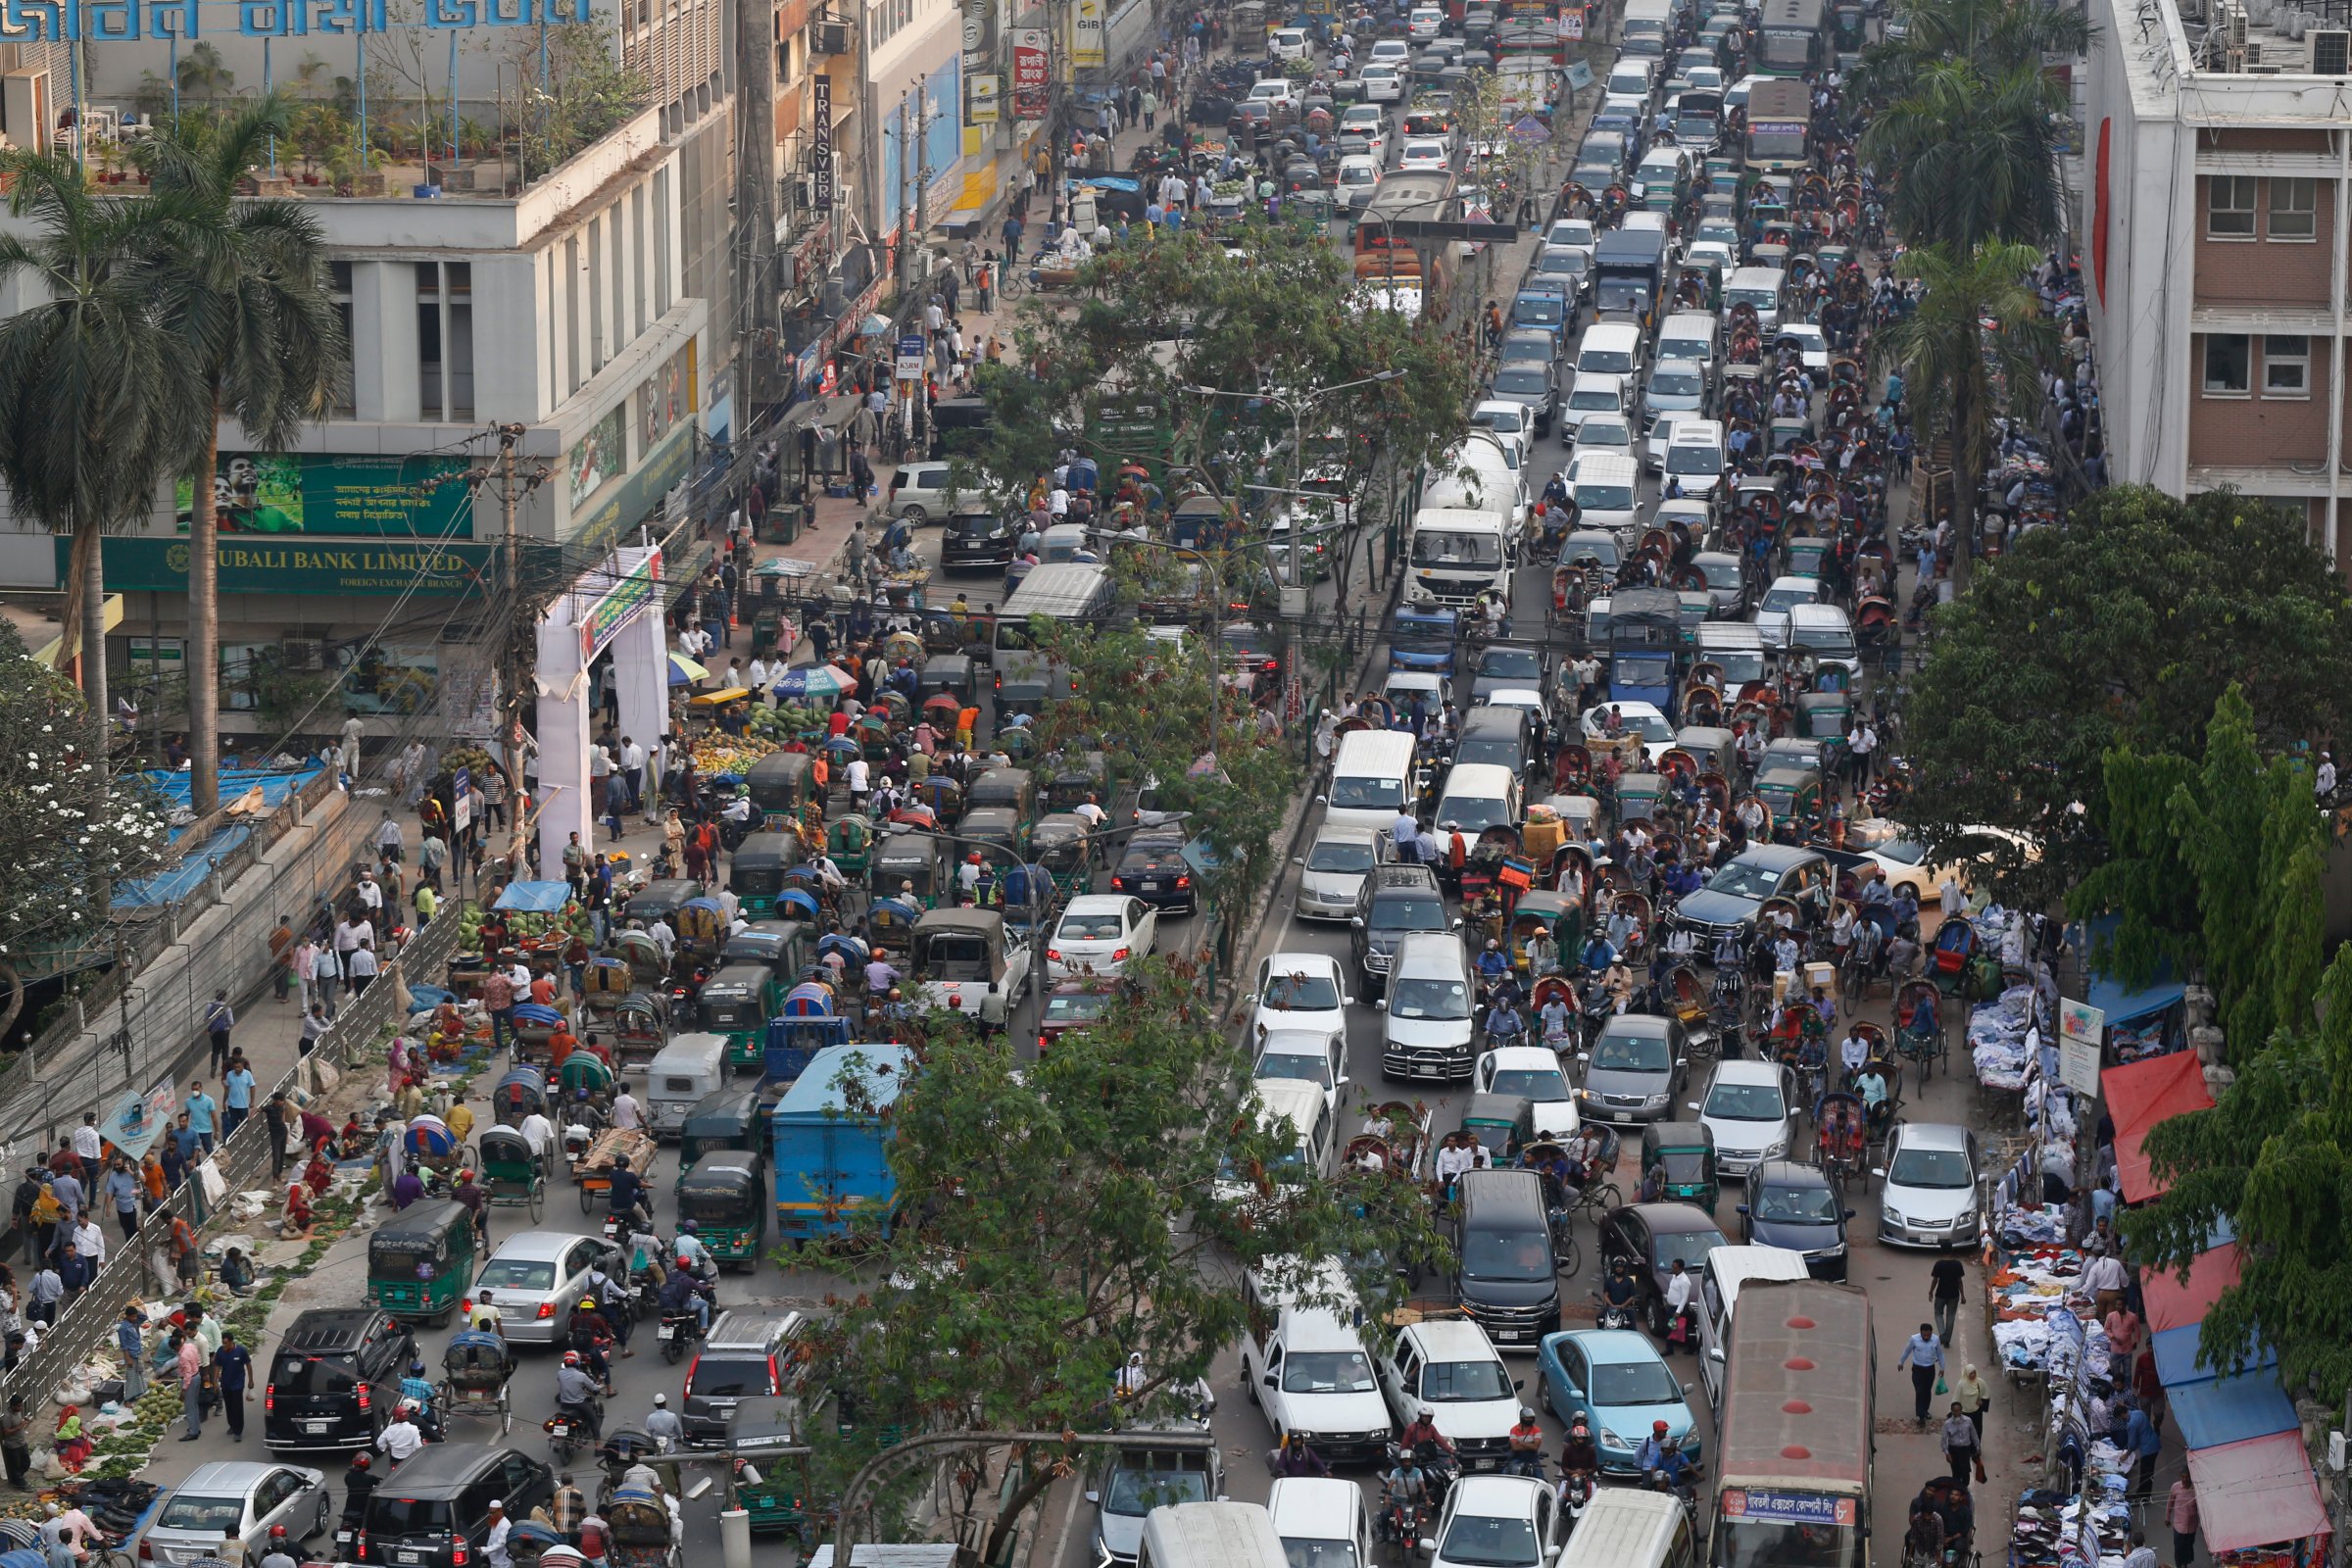 Traffic Jam In Dhaka, Bangladesh